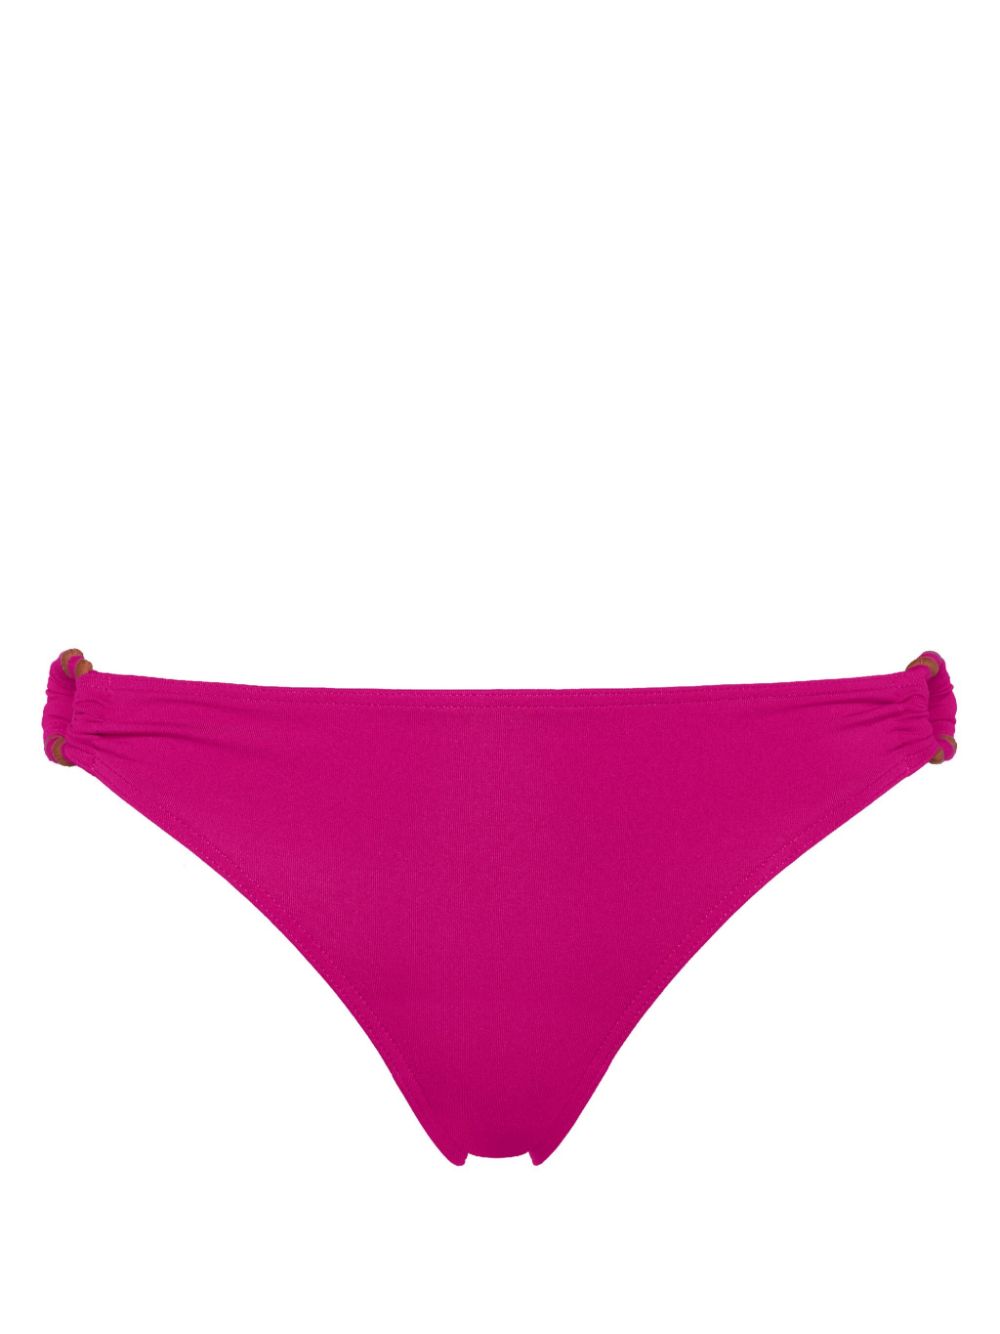 ERES Spirale ring bikini bottoms - Pink von ERES